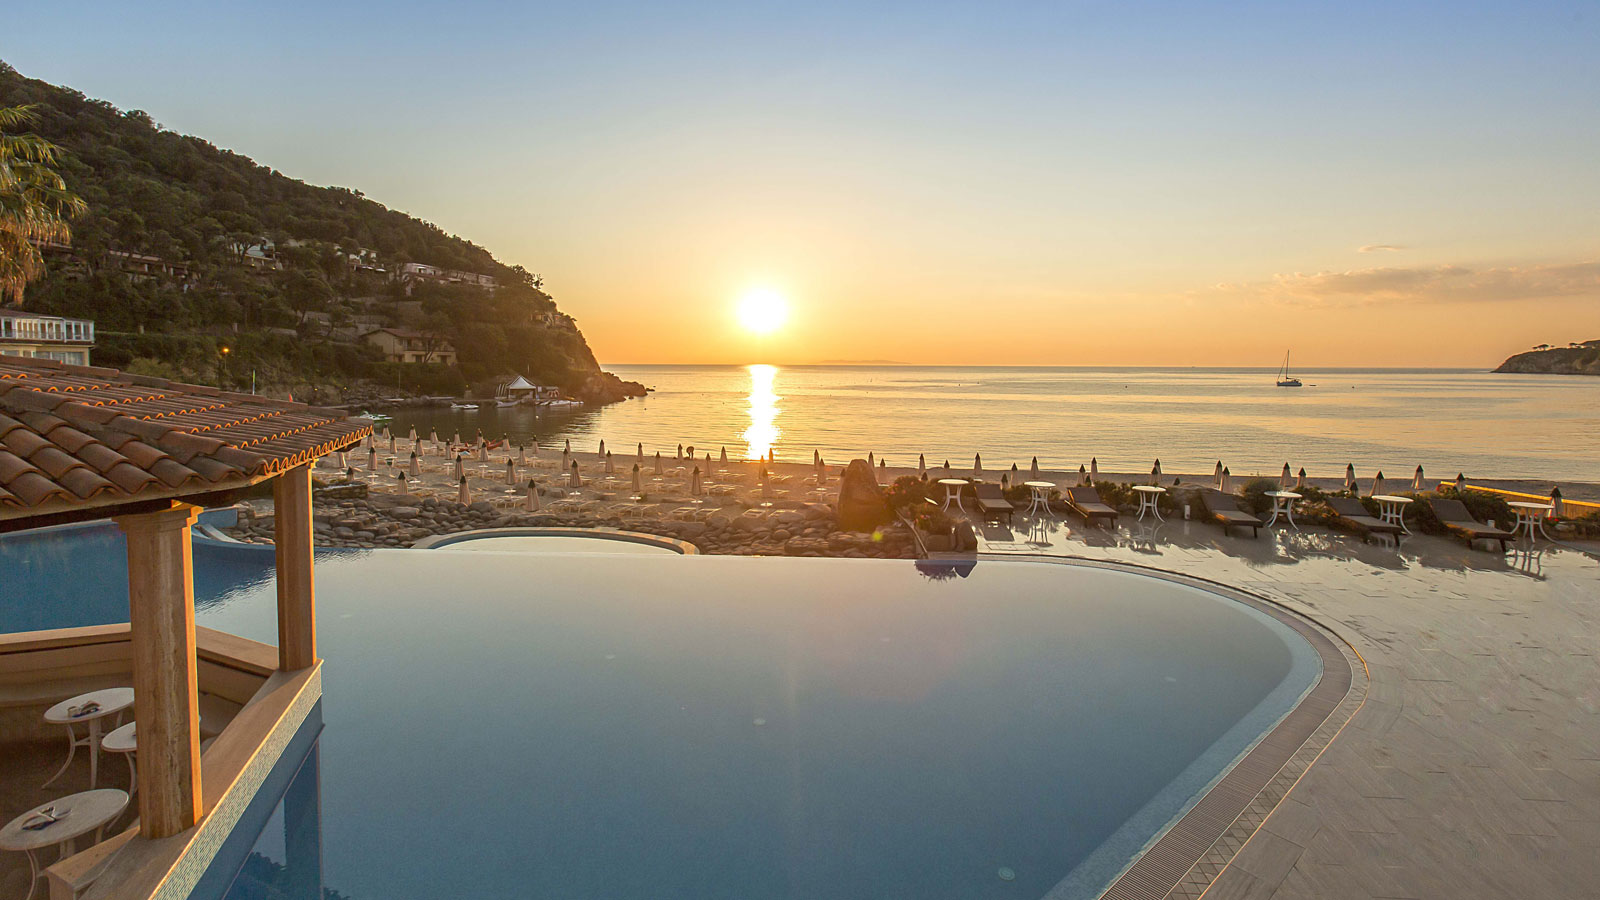 Isola d'Elba: il Golfo della Biodola visto dall'Hotel Hermitage dove si terranno gli incontro B2B della seconda edizione di Buy Tuscany on the road